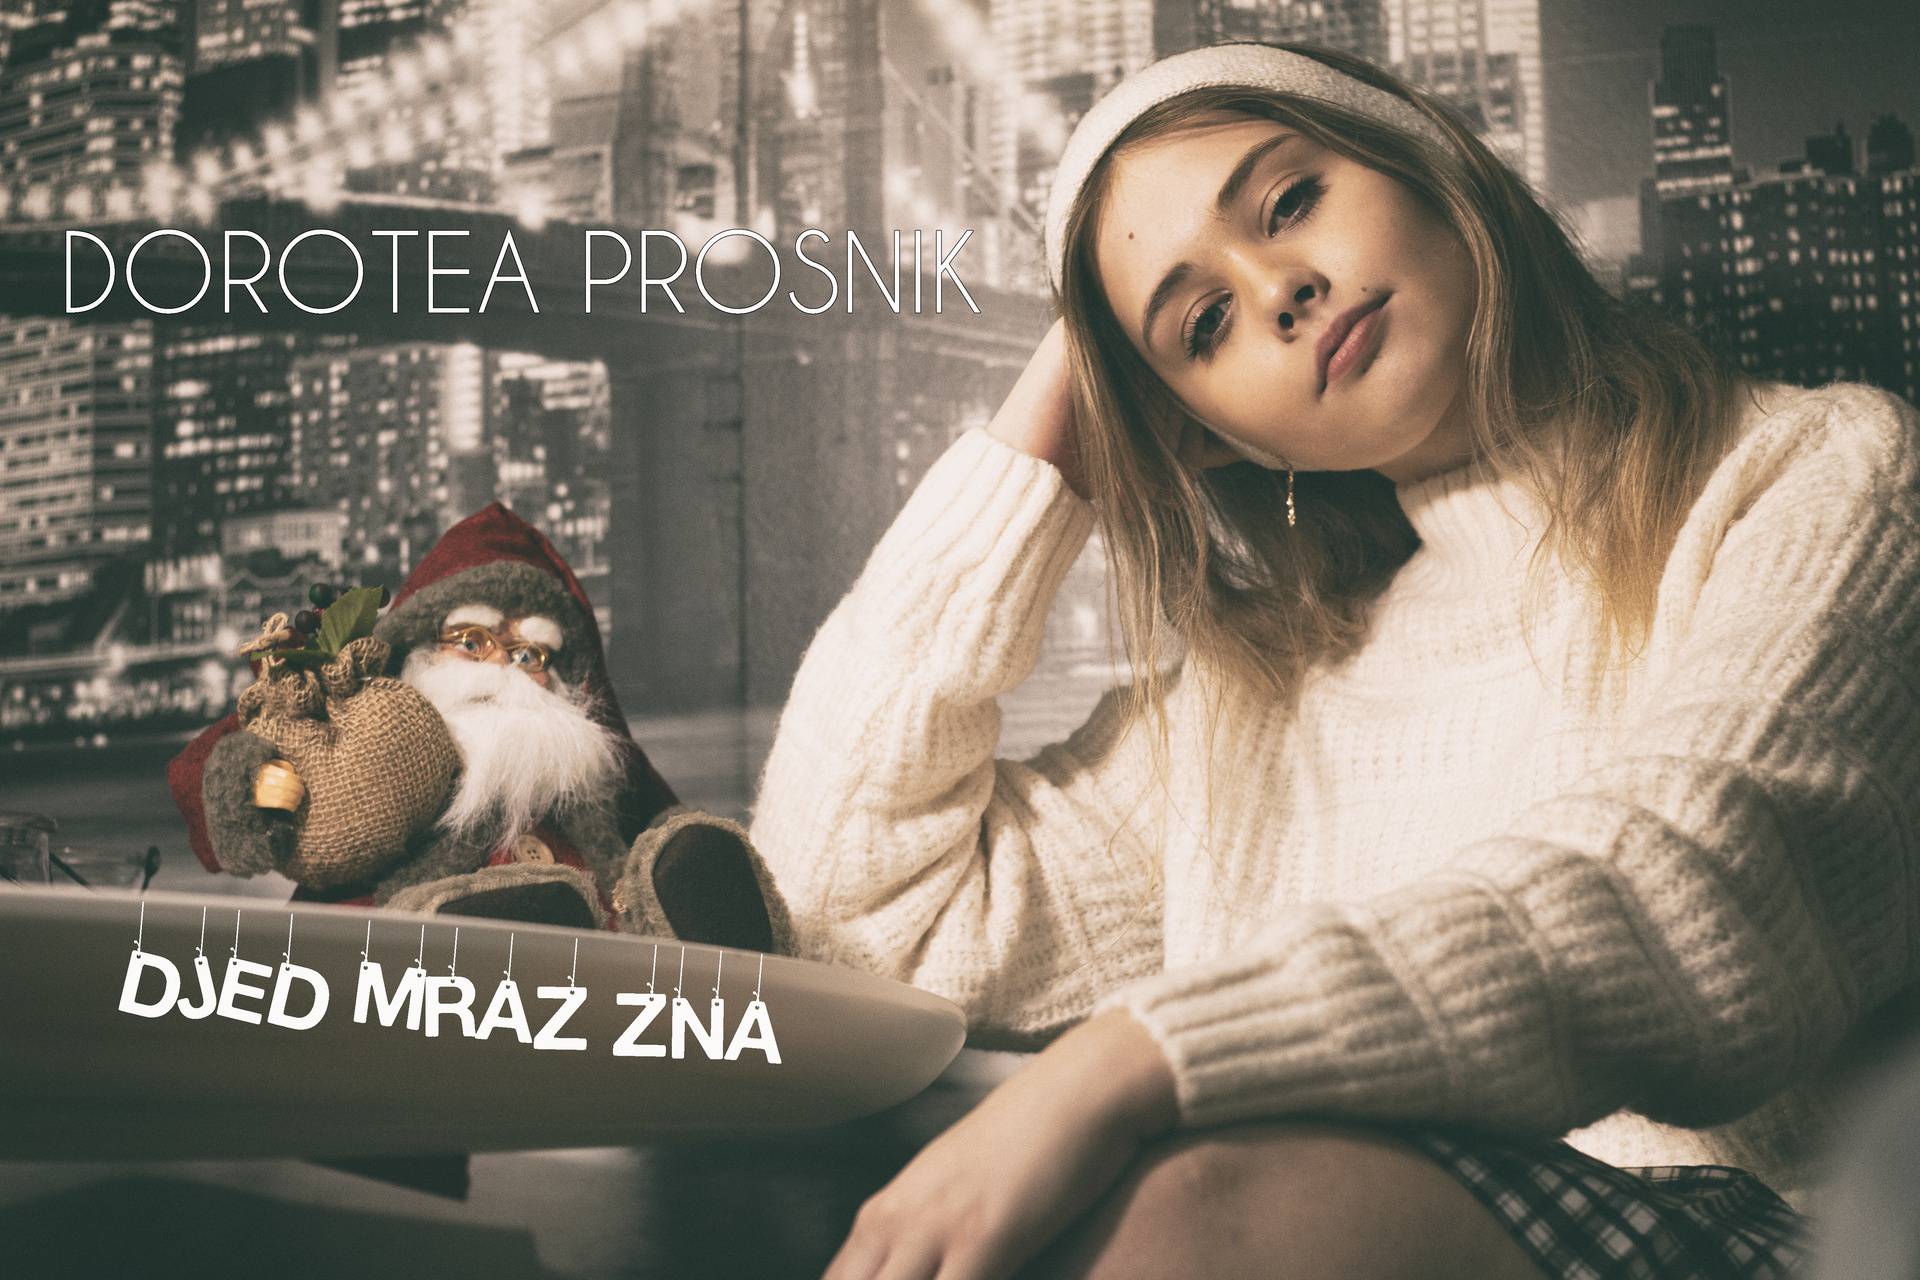 Dorotea Prosnik iz 'Superstara' objavila prvu Božićnu pjesmu ove godine: 'Djed Mraz zna'